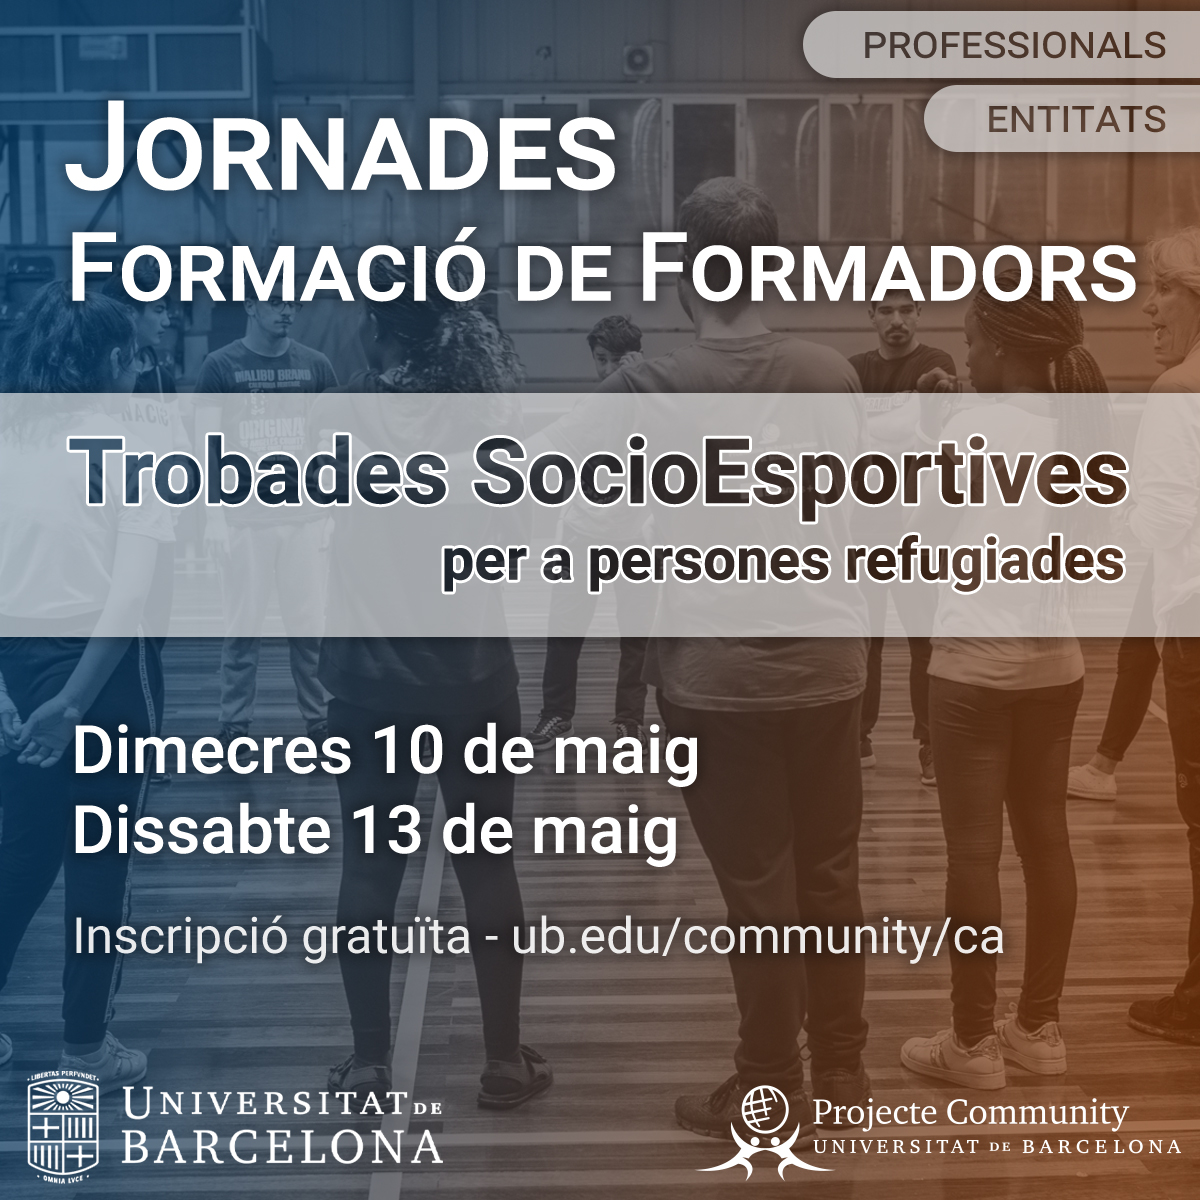 #EstudiantsUB | 🏃‍♀️ Jornades de #formació pràctica en intervenció socioeducativa per a la #InclusióSocial de persones refugiades a través de l'#esport

📅 10 i 13 de maig
📌 #CampusMundet UB
✍️ bit.ly/3oo3Fg5

@EducacioUB @UniBarcelona